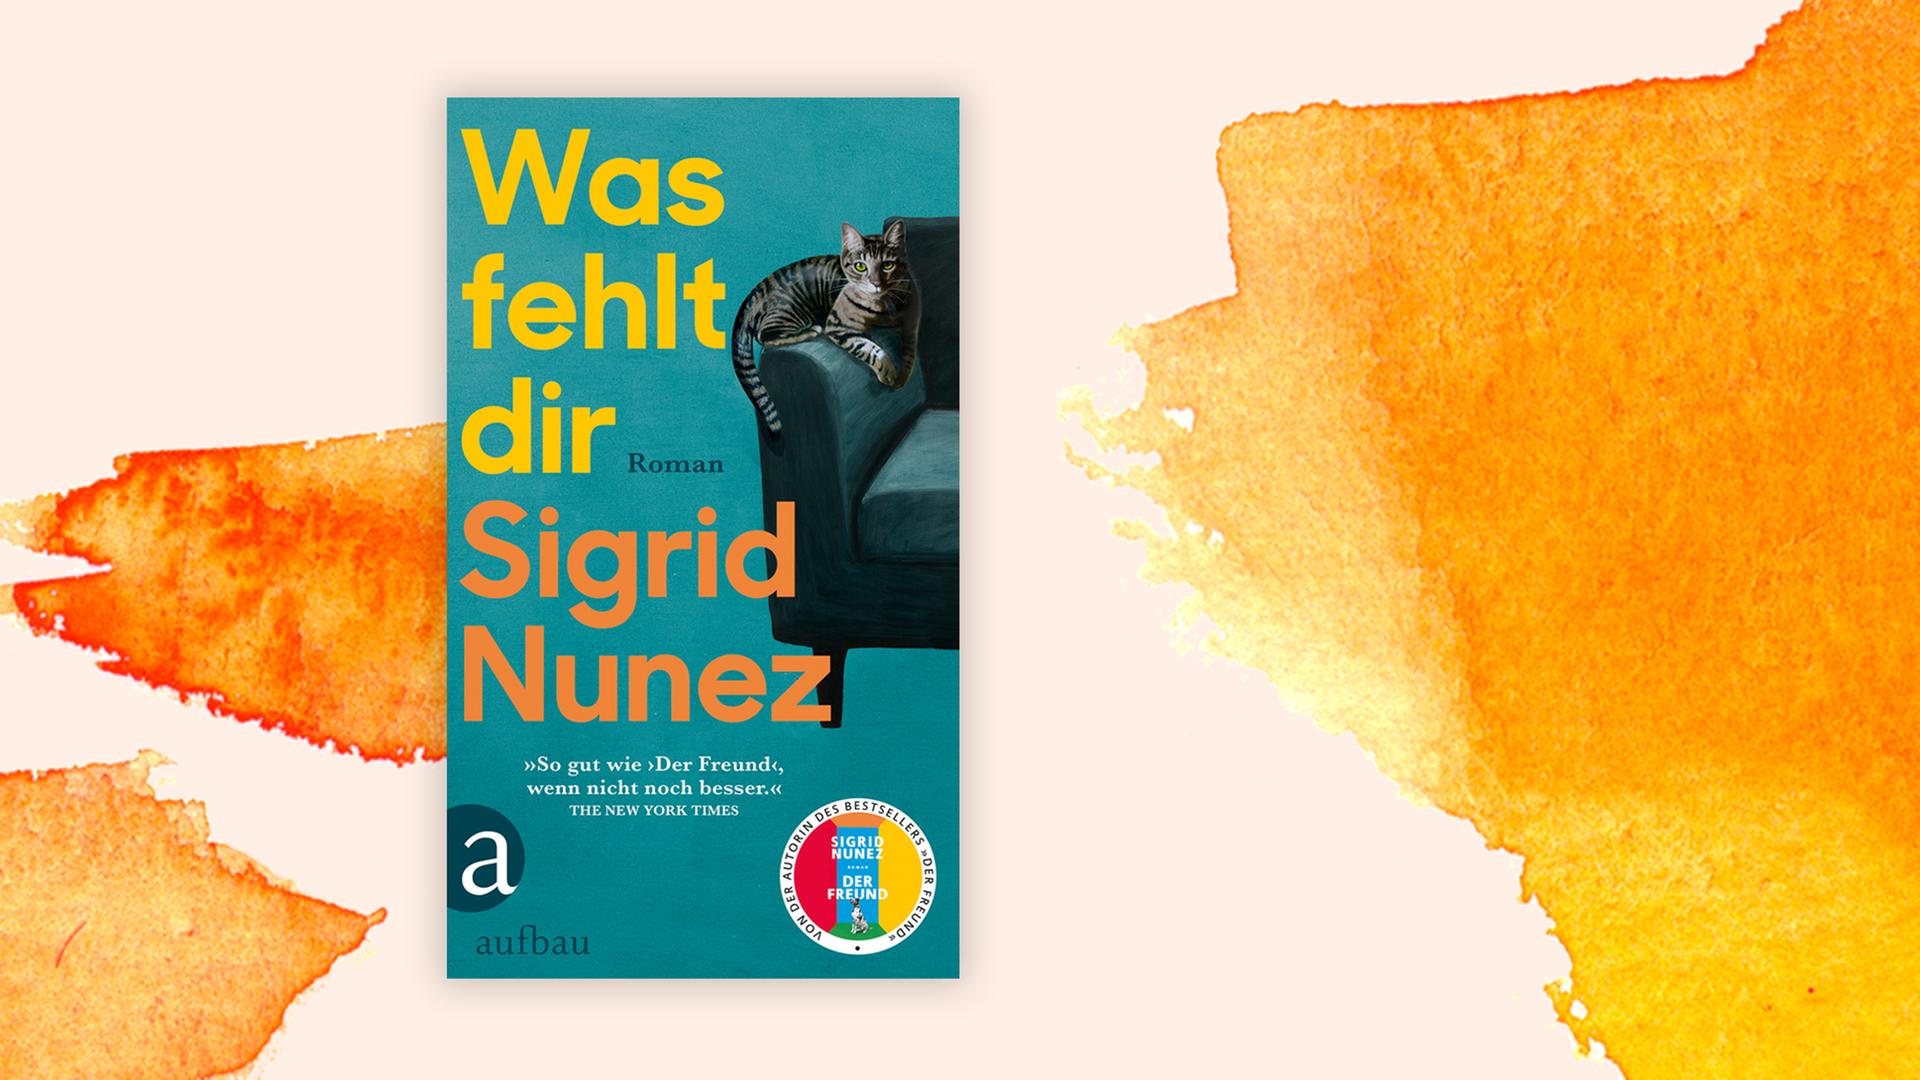 Buchcover "Was fehlt dir" von Sigrid Nunez